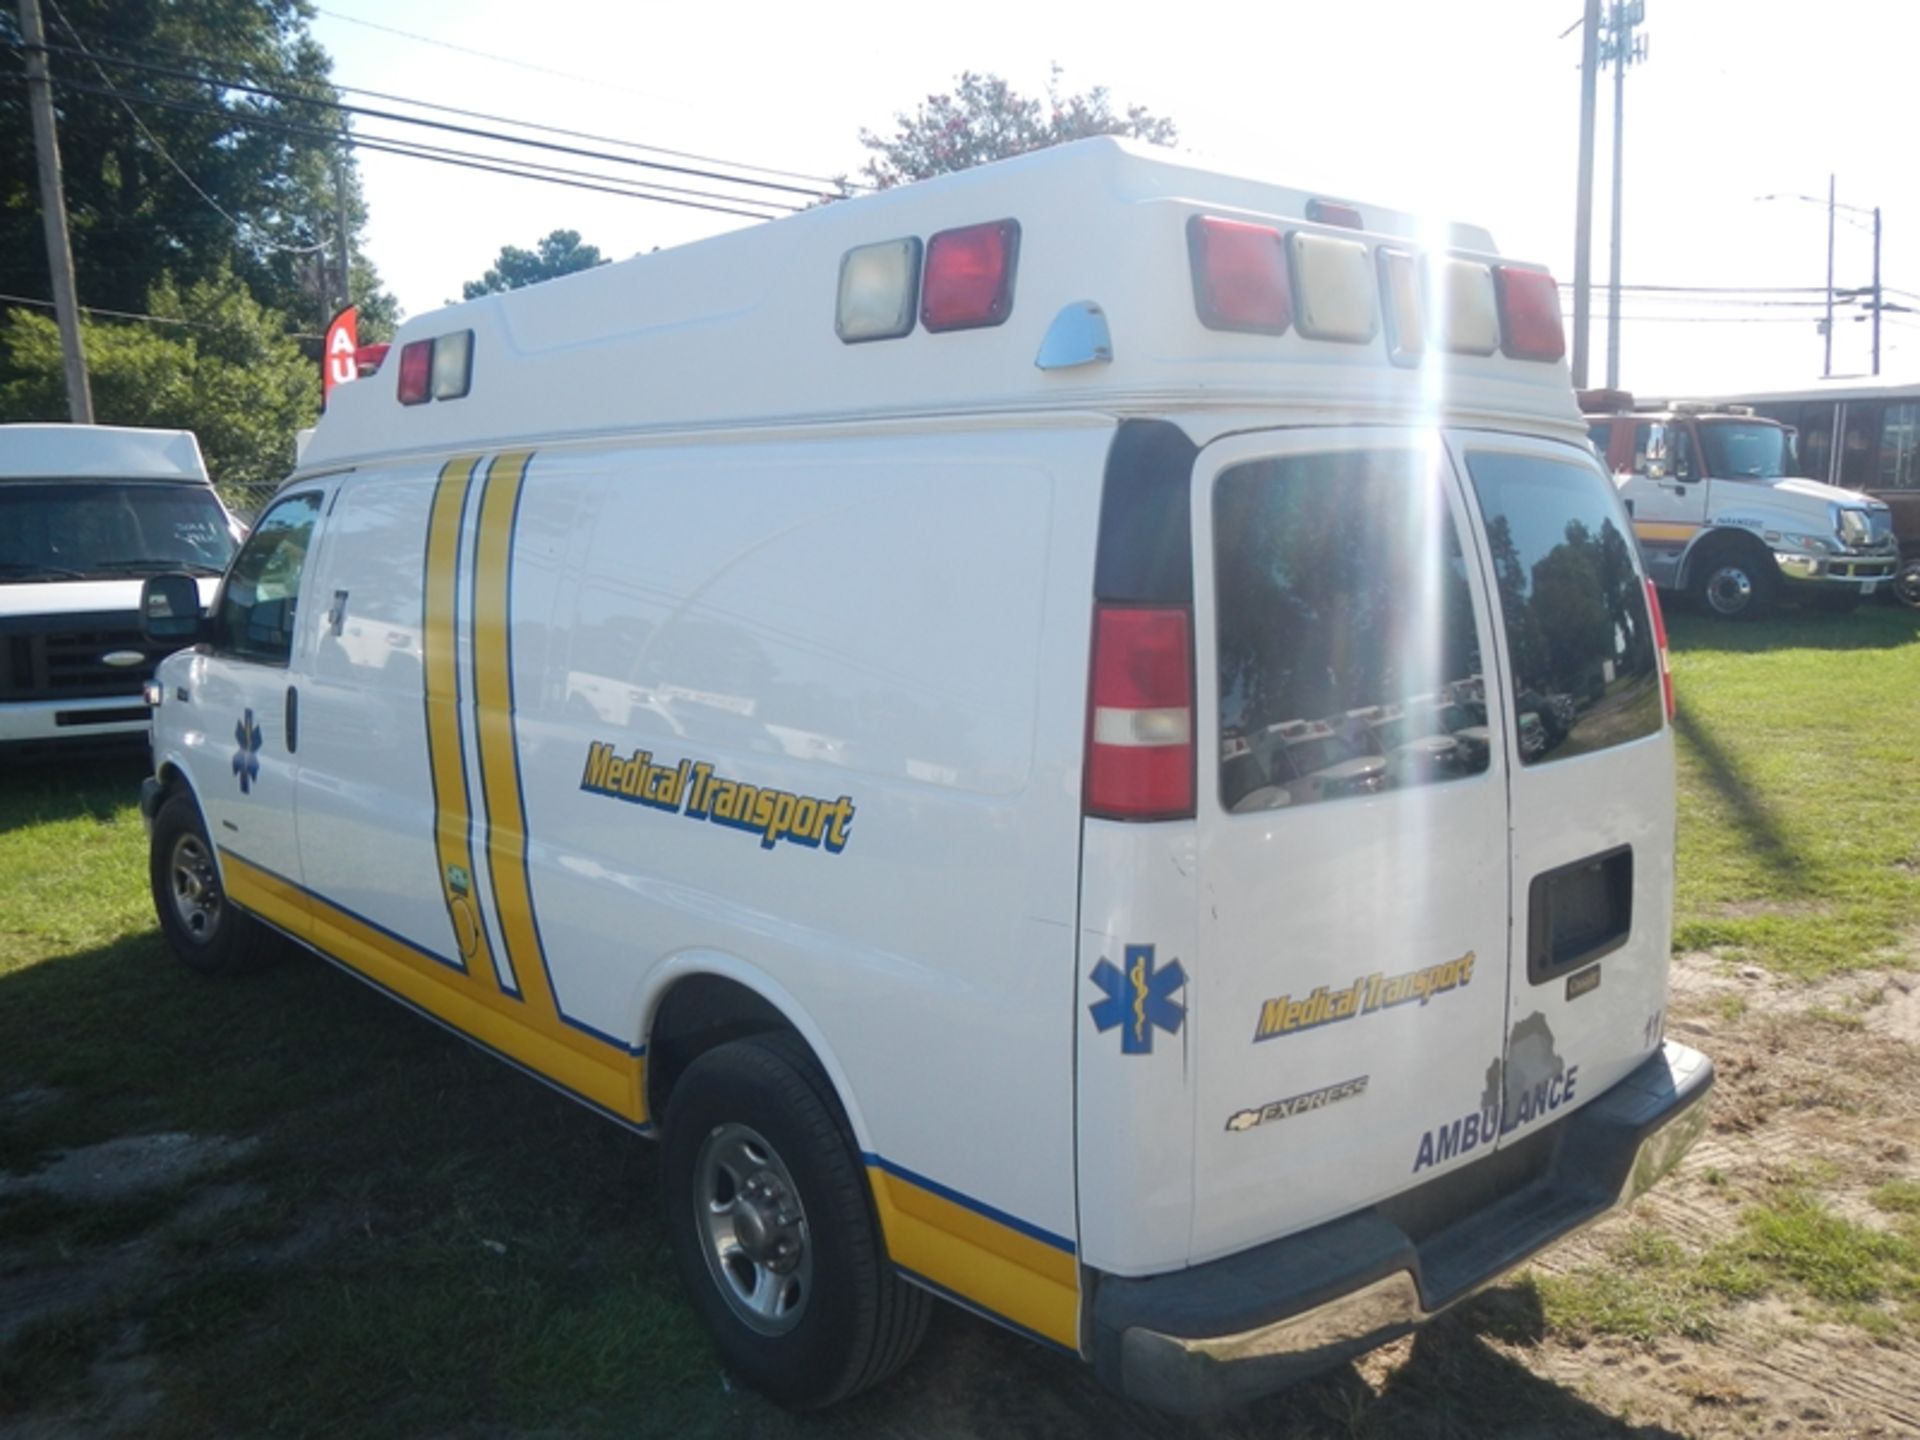 2009 CHEVROLET G-3500 Type II Ambulance dsl 1GBHG396191167485 - Image 4 of 6